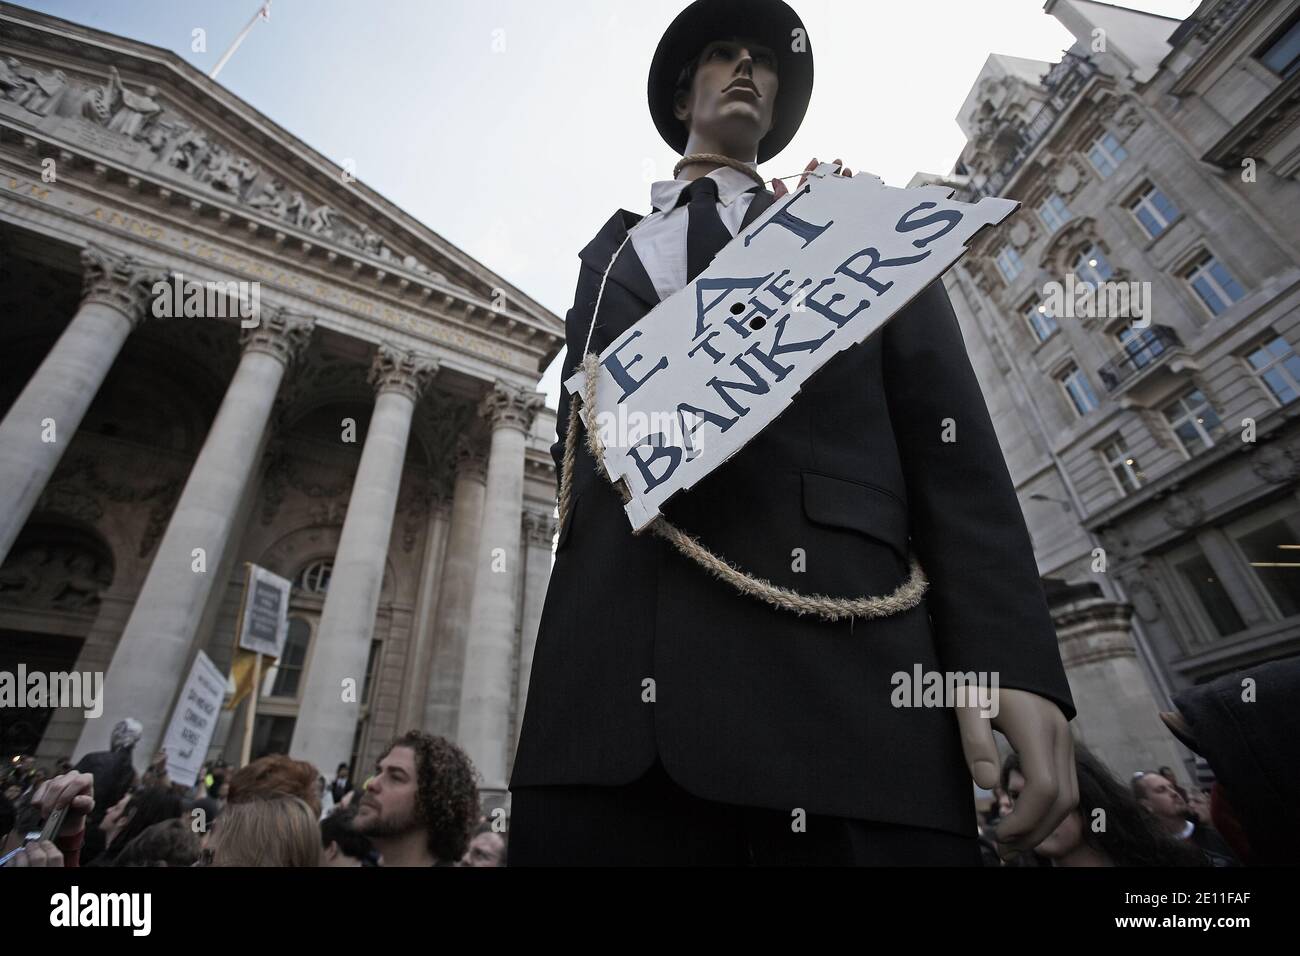 GRAN BRETAÑA / Inglaterra / Londres / UN maniquí vestido como un banquero es ahorcado del poste de luz del tráfico fuera Durante las manifestaciones del G20 en el CIT Foto de stock